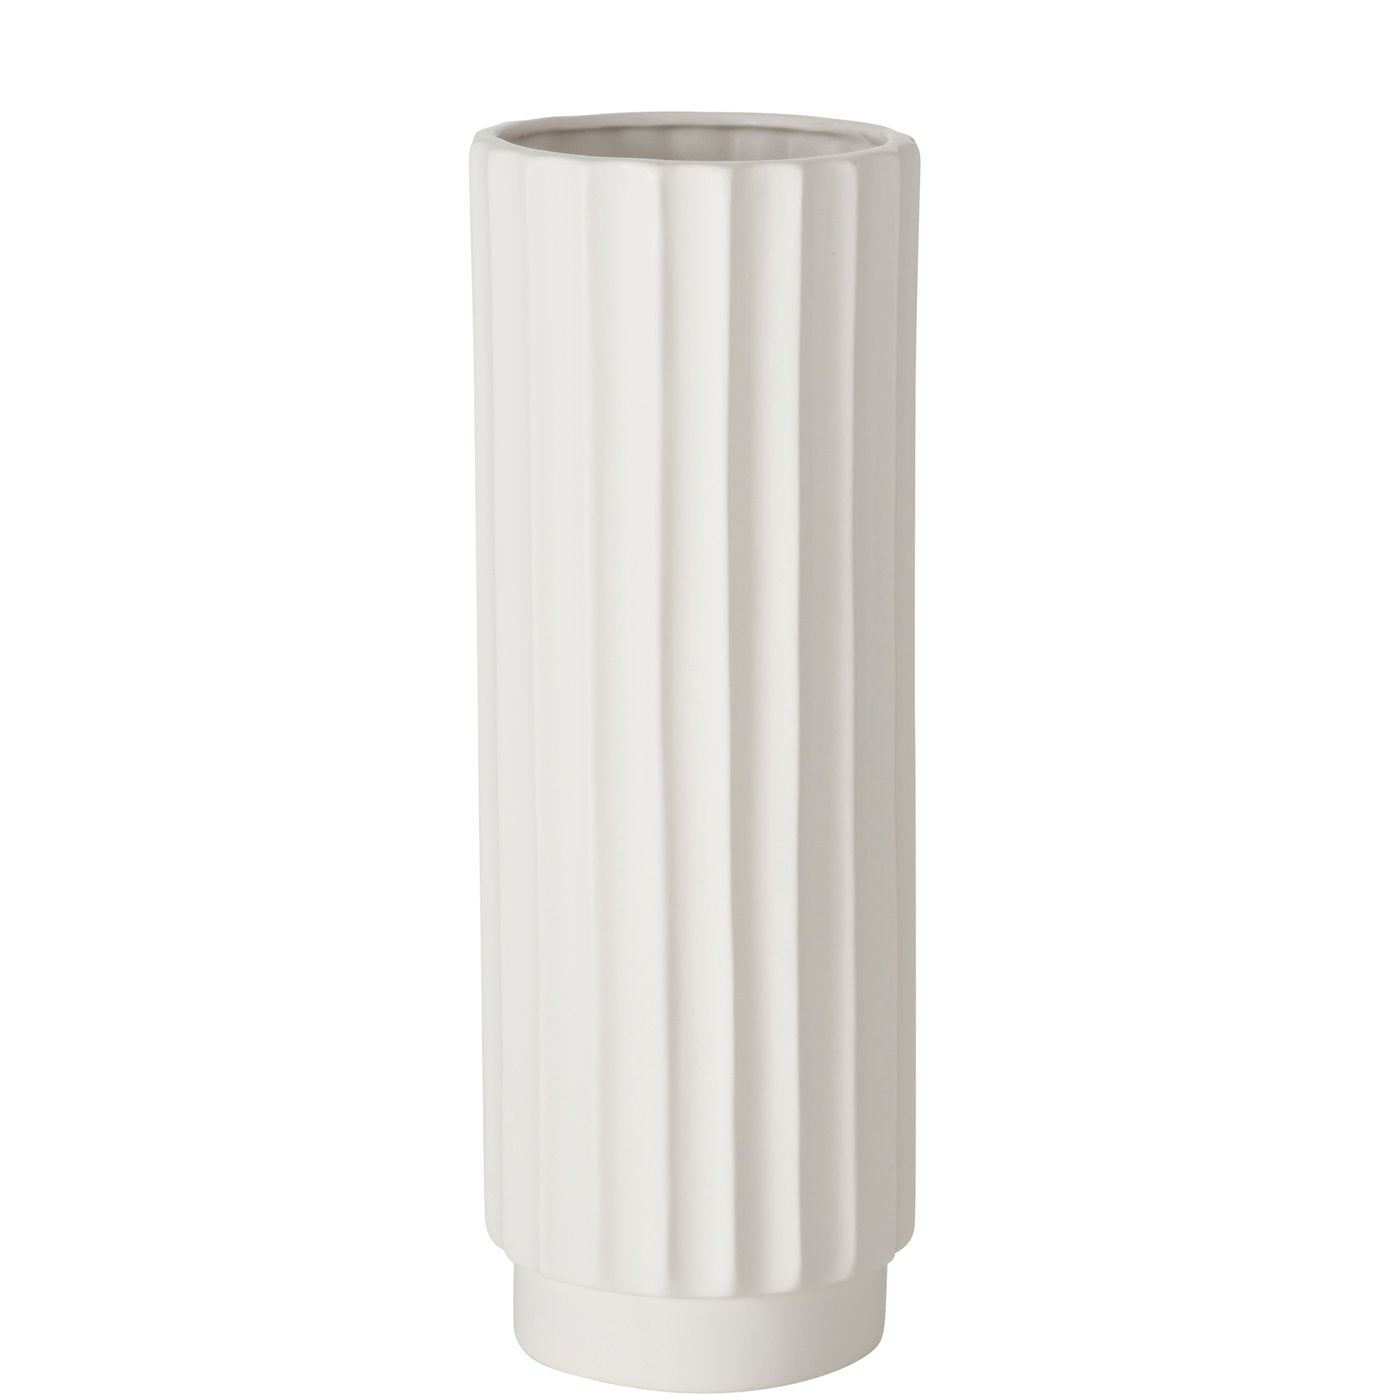 Vase Vertical Harmony in Weiß